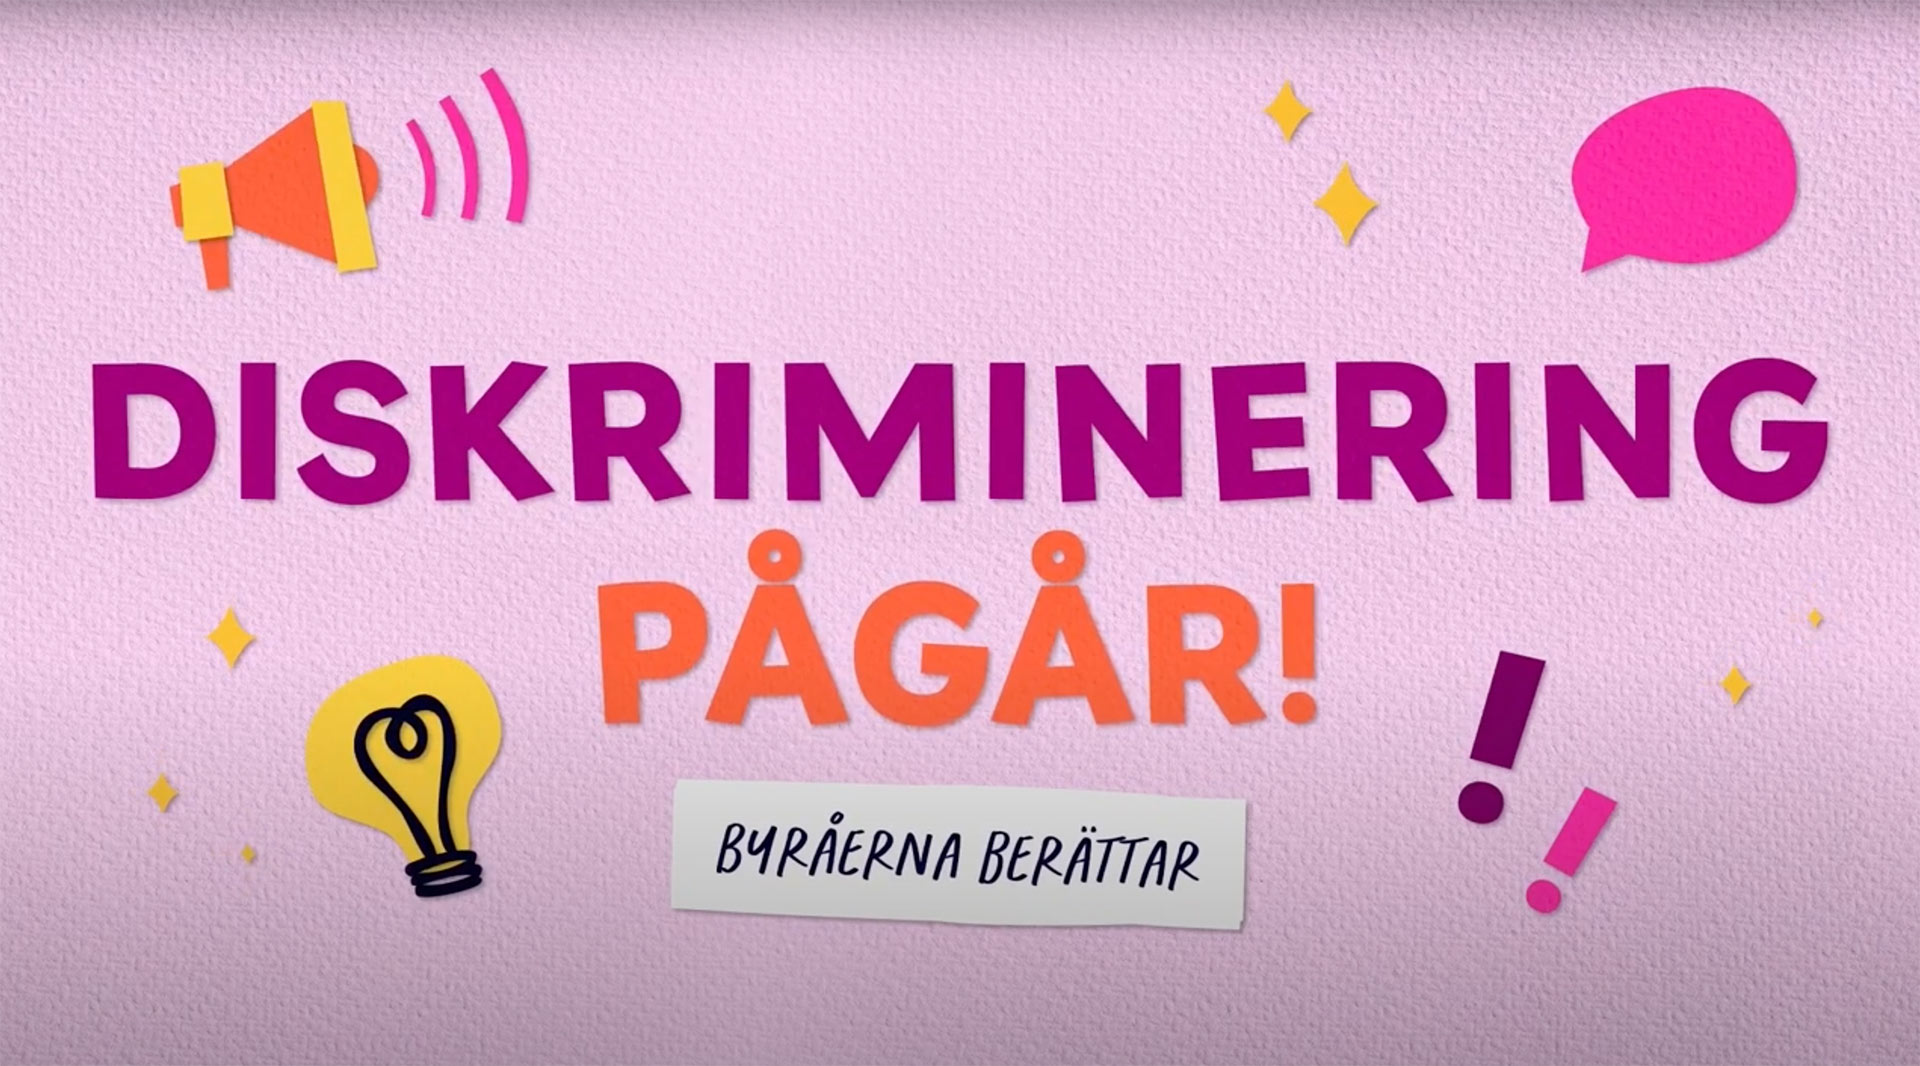 Omslagsbild för webbserien "Sveriges antidiskrimineringsbyråer berättar""